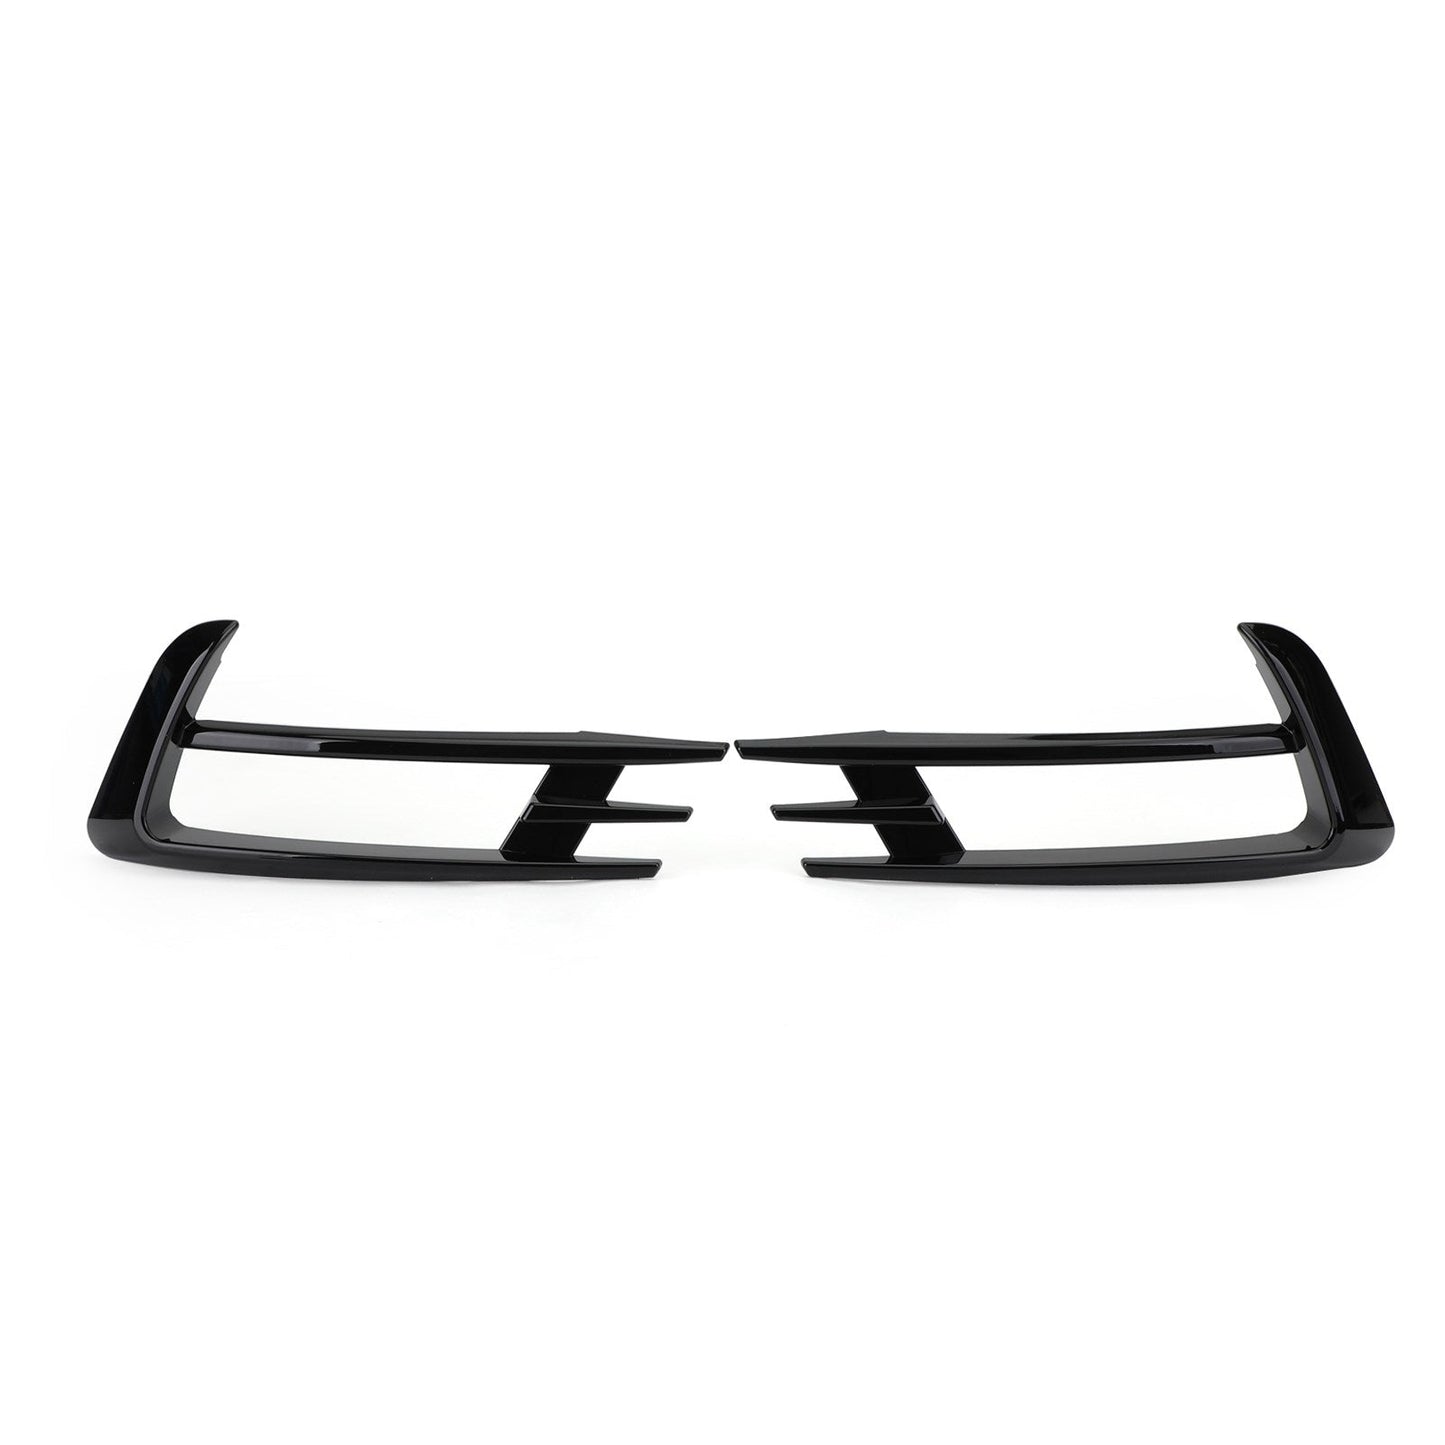 2pcs schwarze vordere nebel leichte lampe Augenbrauenabdeckung für VW Golf 7 MK7 2014-2017